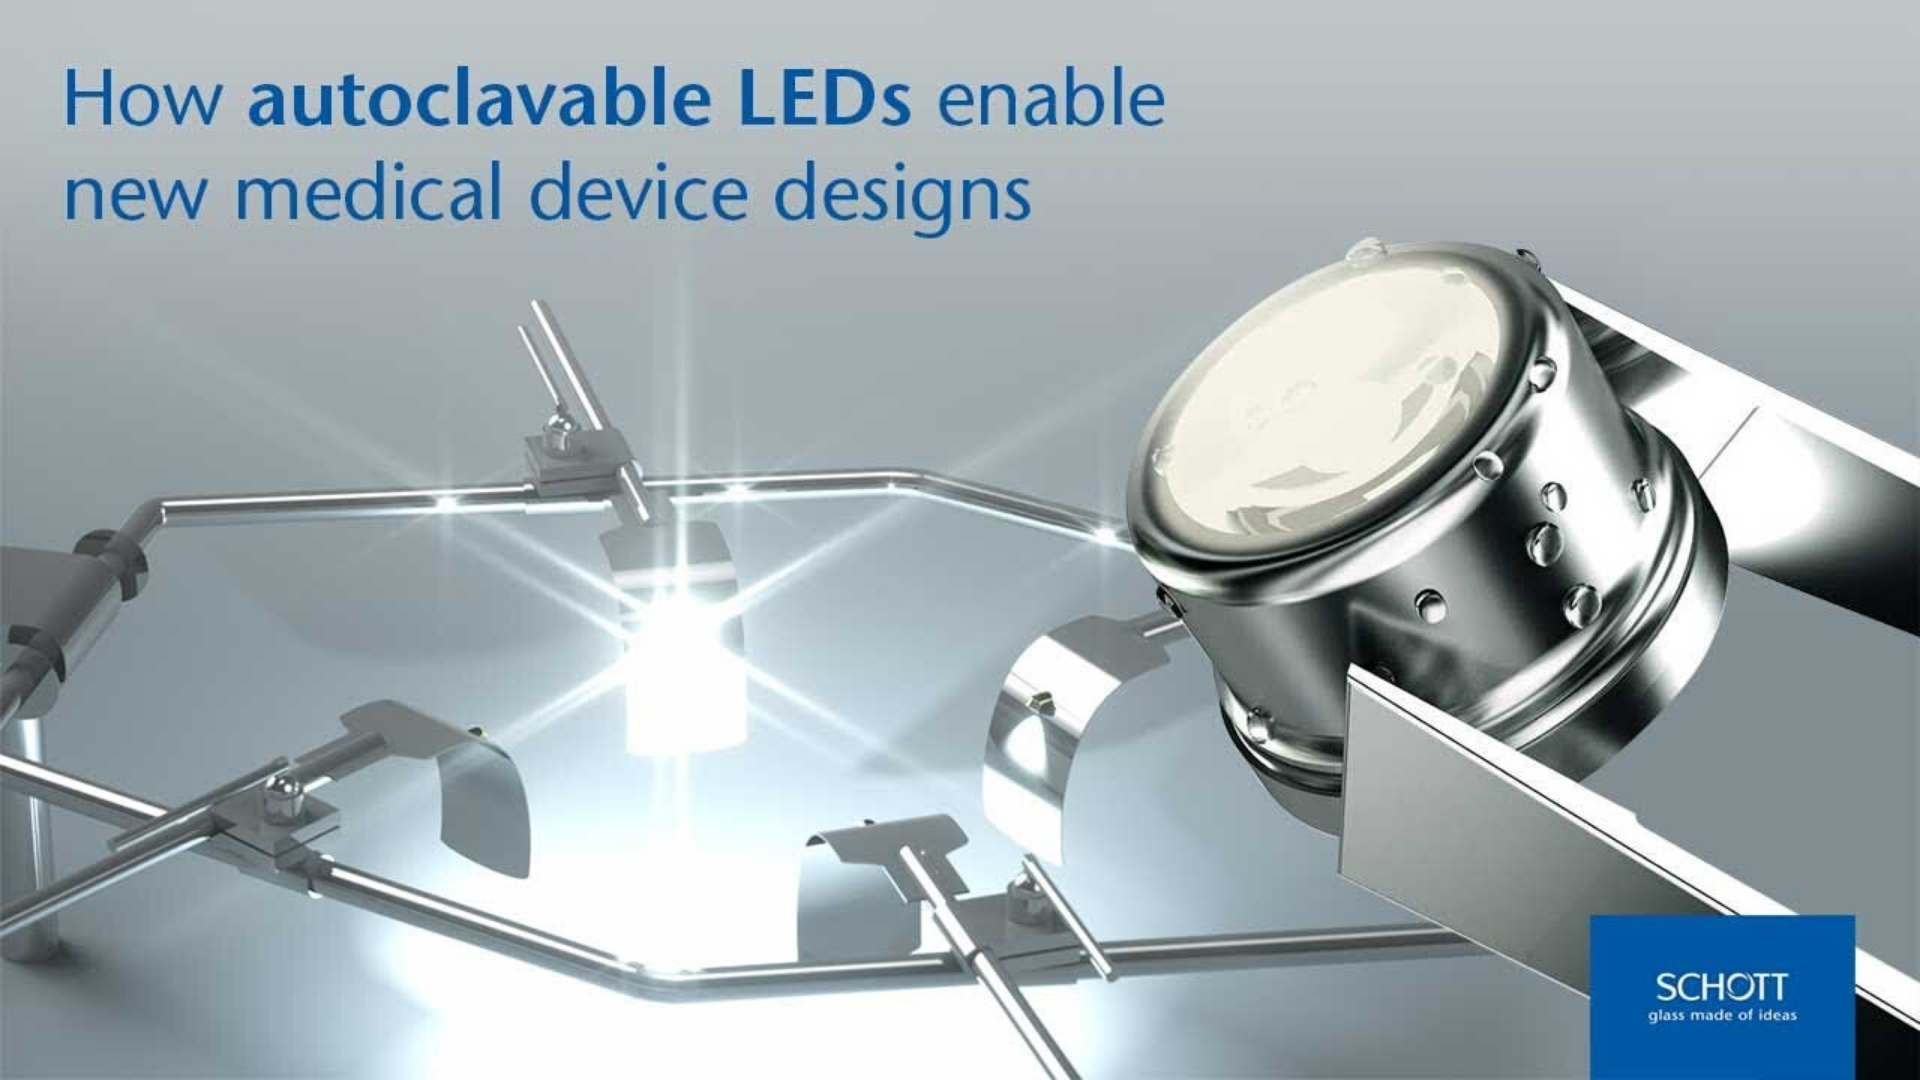 Cliquez pour découvrir comment les LED autoclavables SCHOTT Solidur® permettent de concevoir de nouveaux dispositifs médicaux